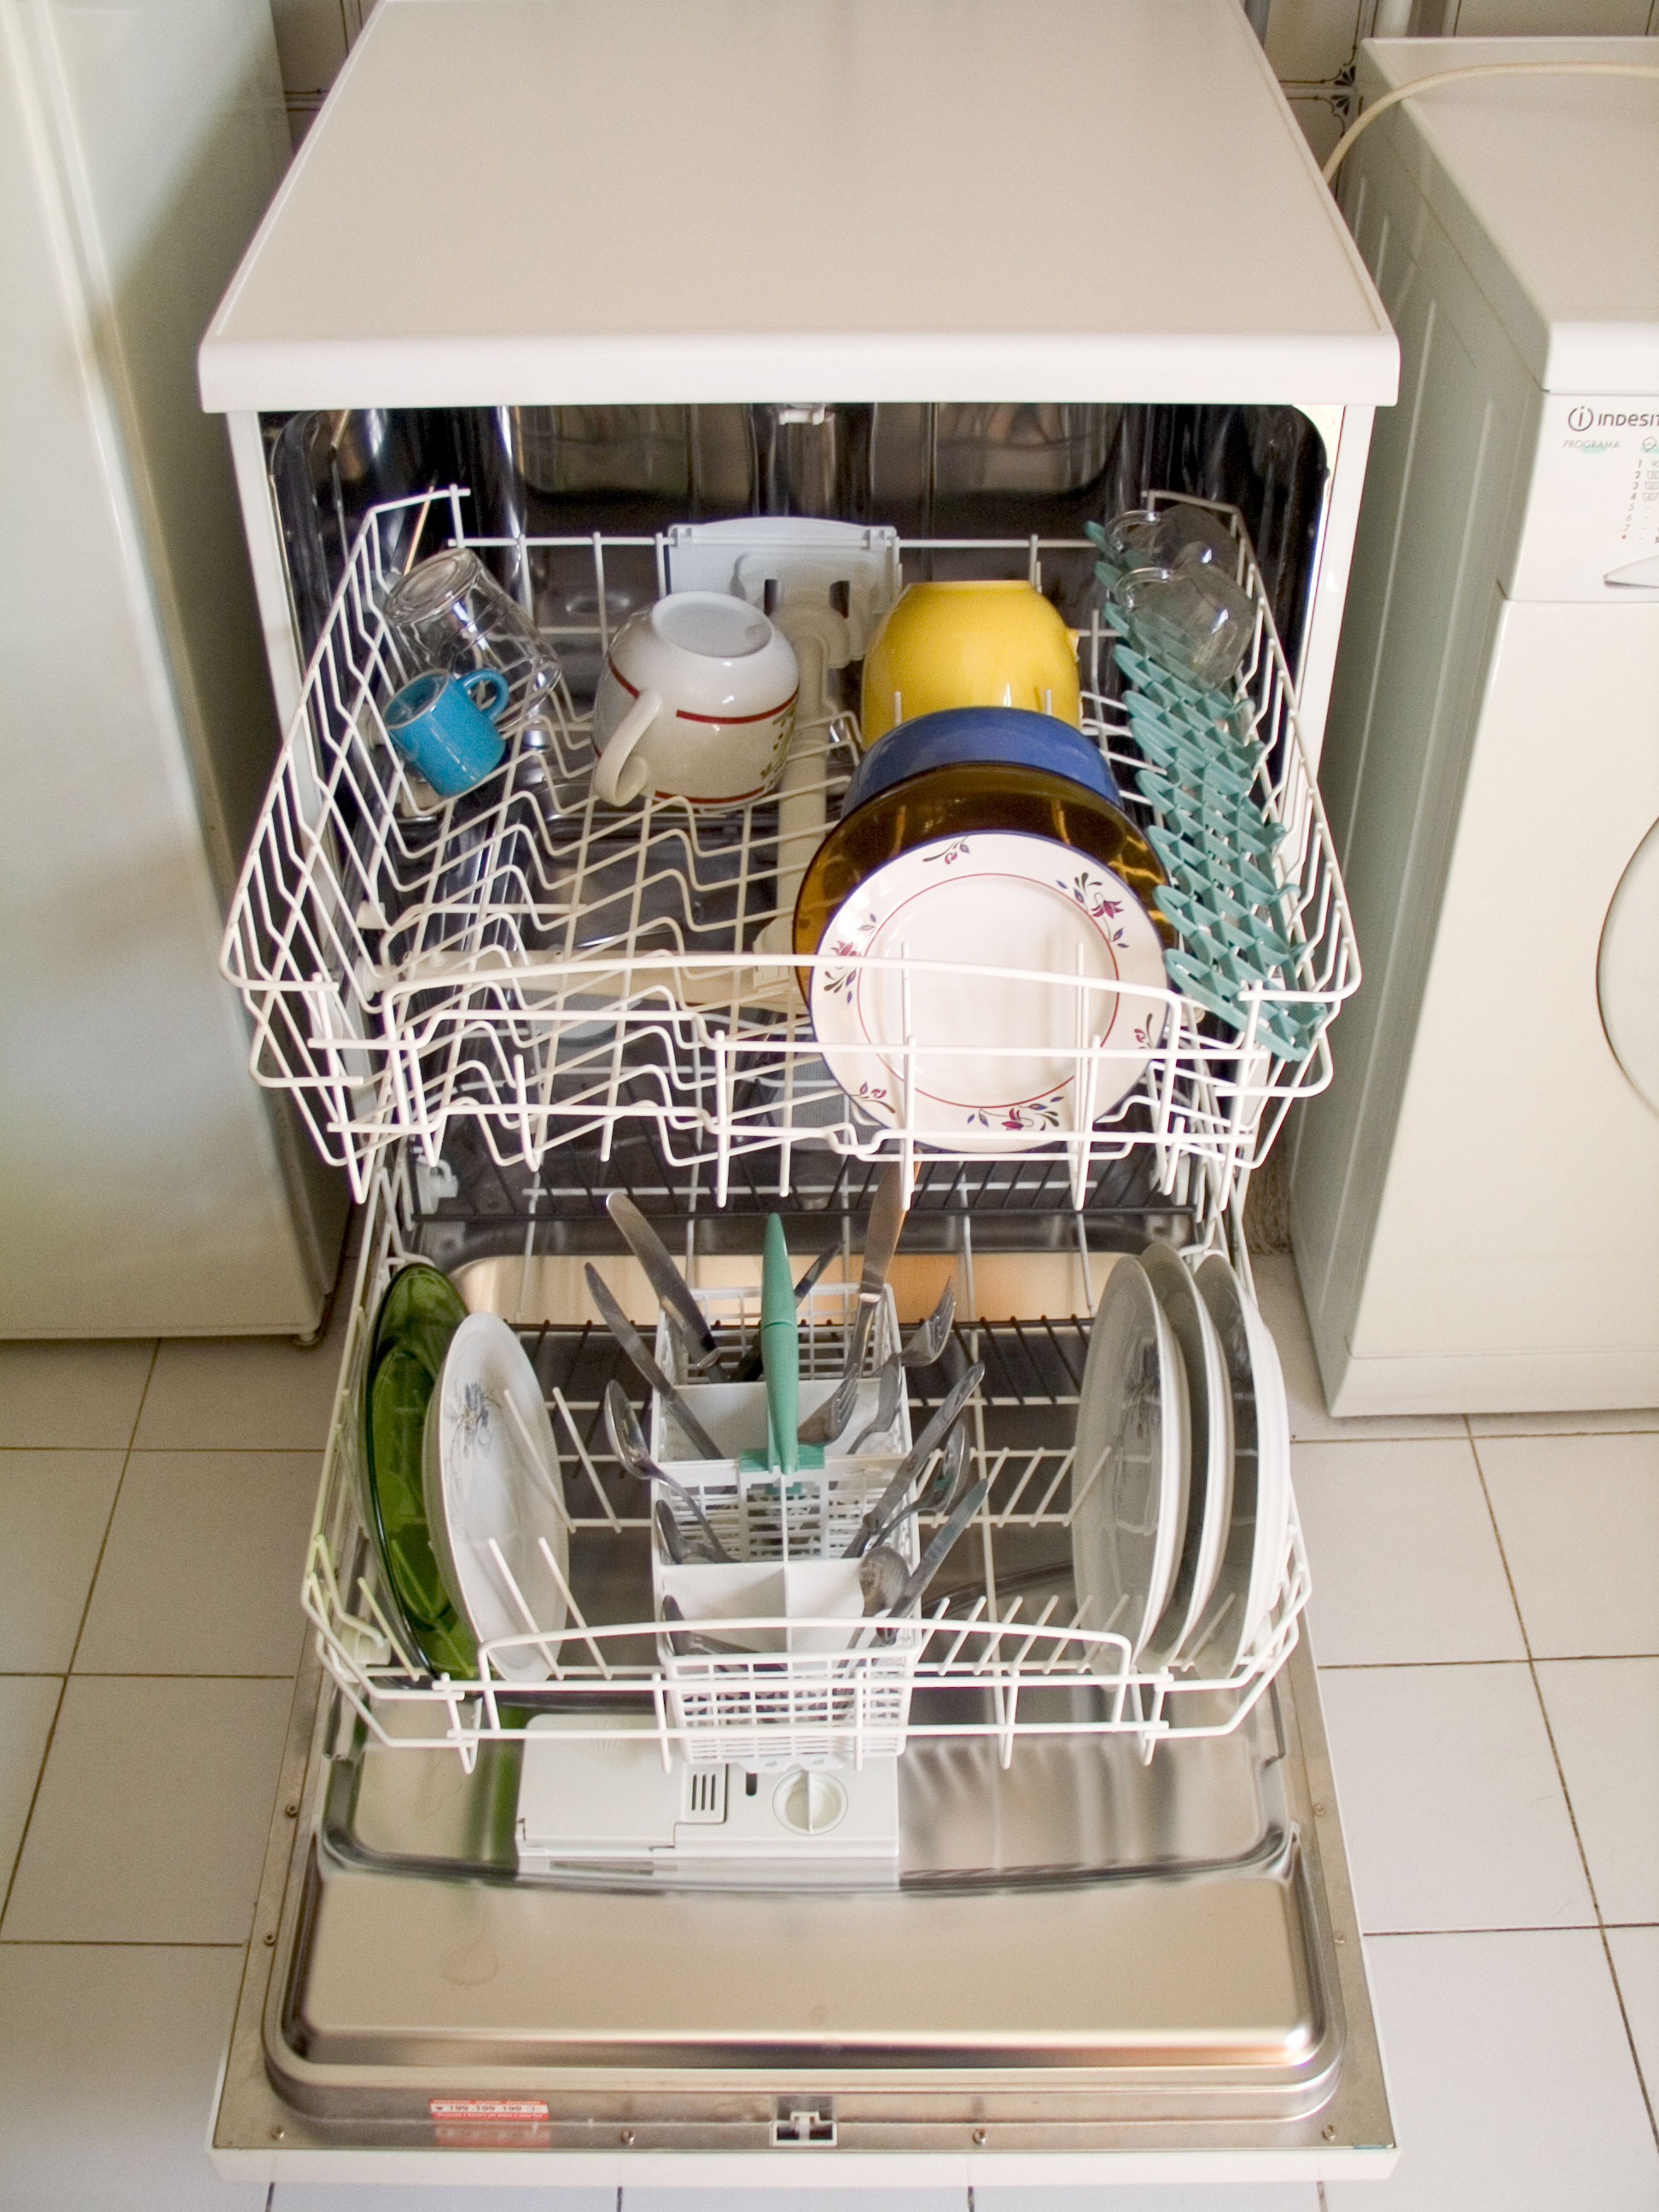 L'évacuation du lave-vaisselle peut se faire dans un évier ou une baignoire. © Carlos Paes, Wikimedia Commons, CC